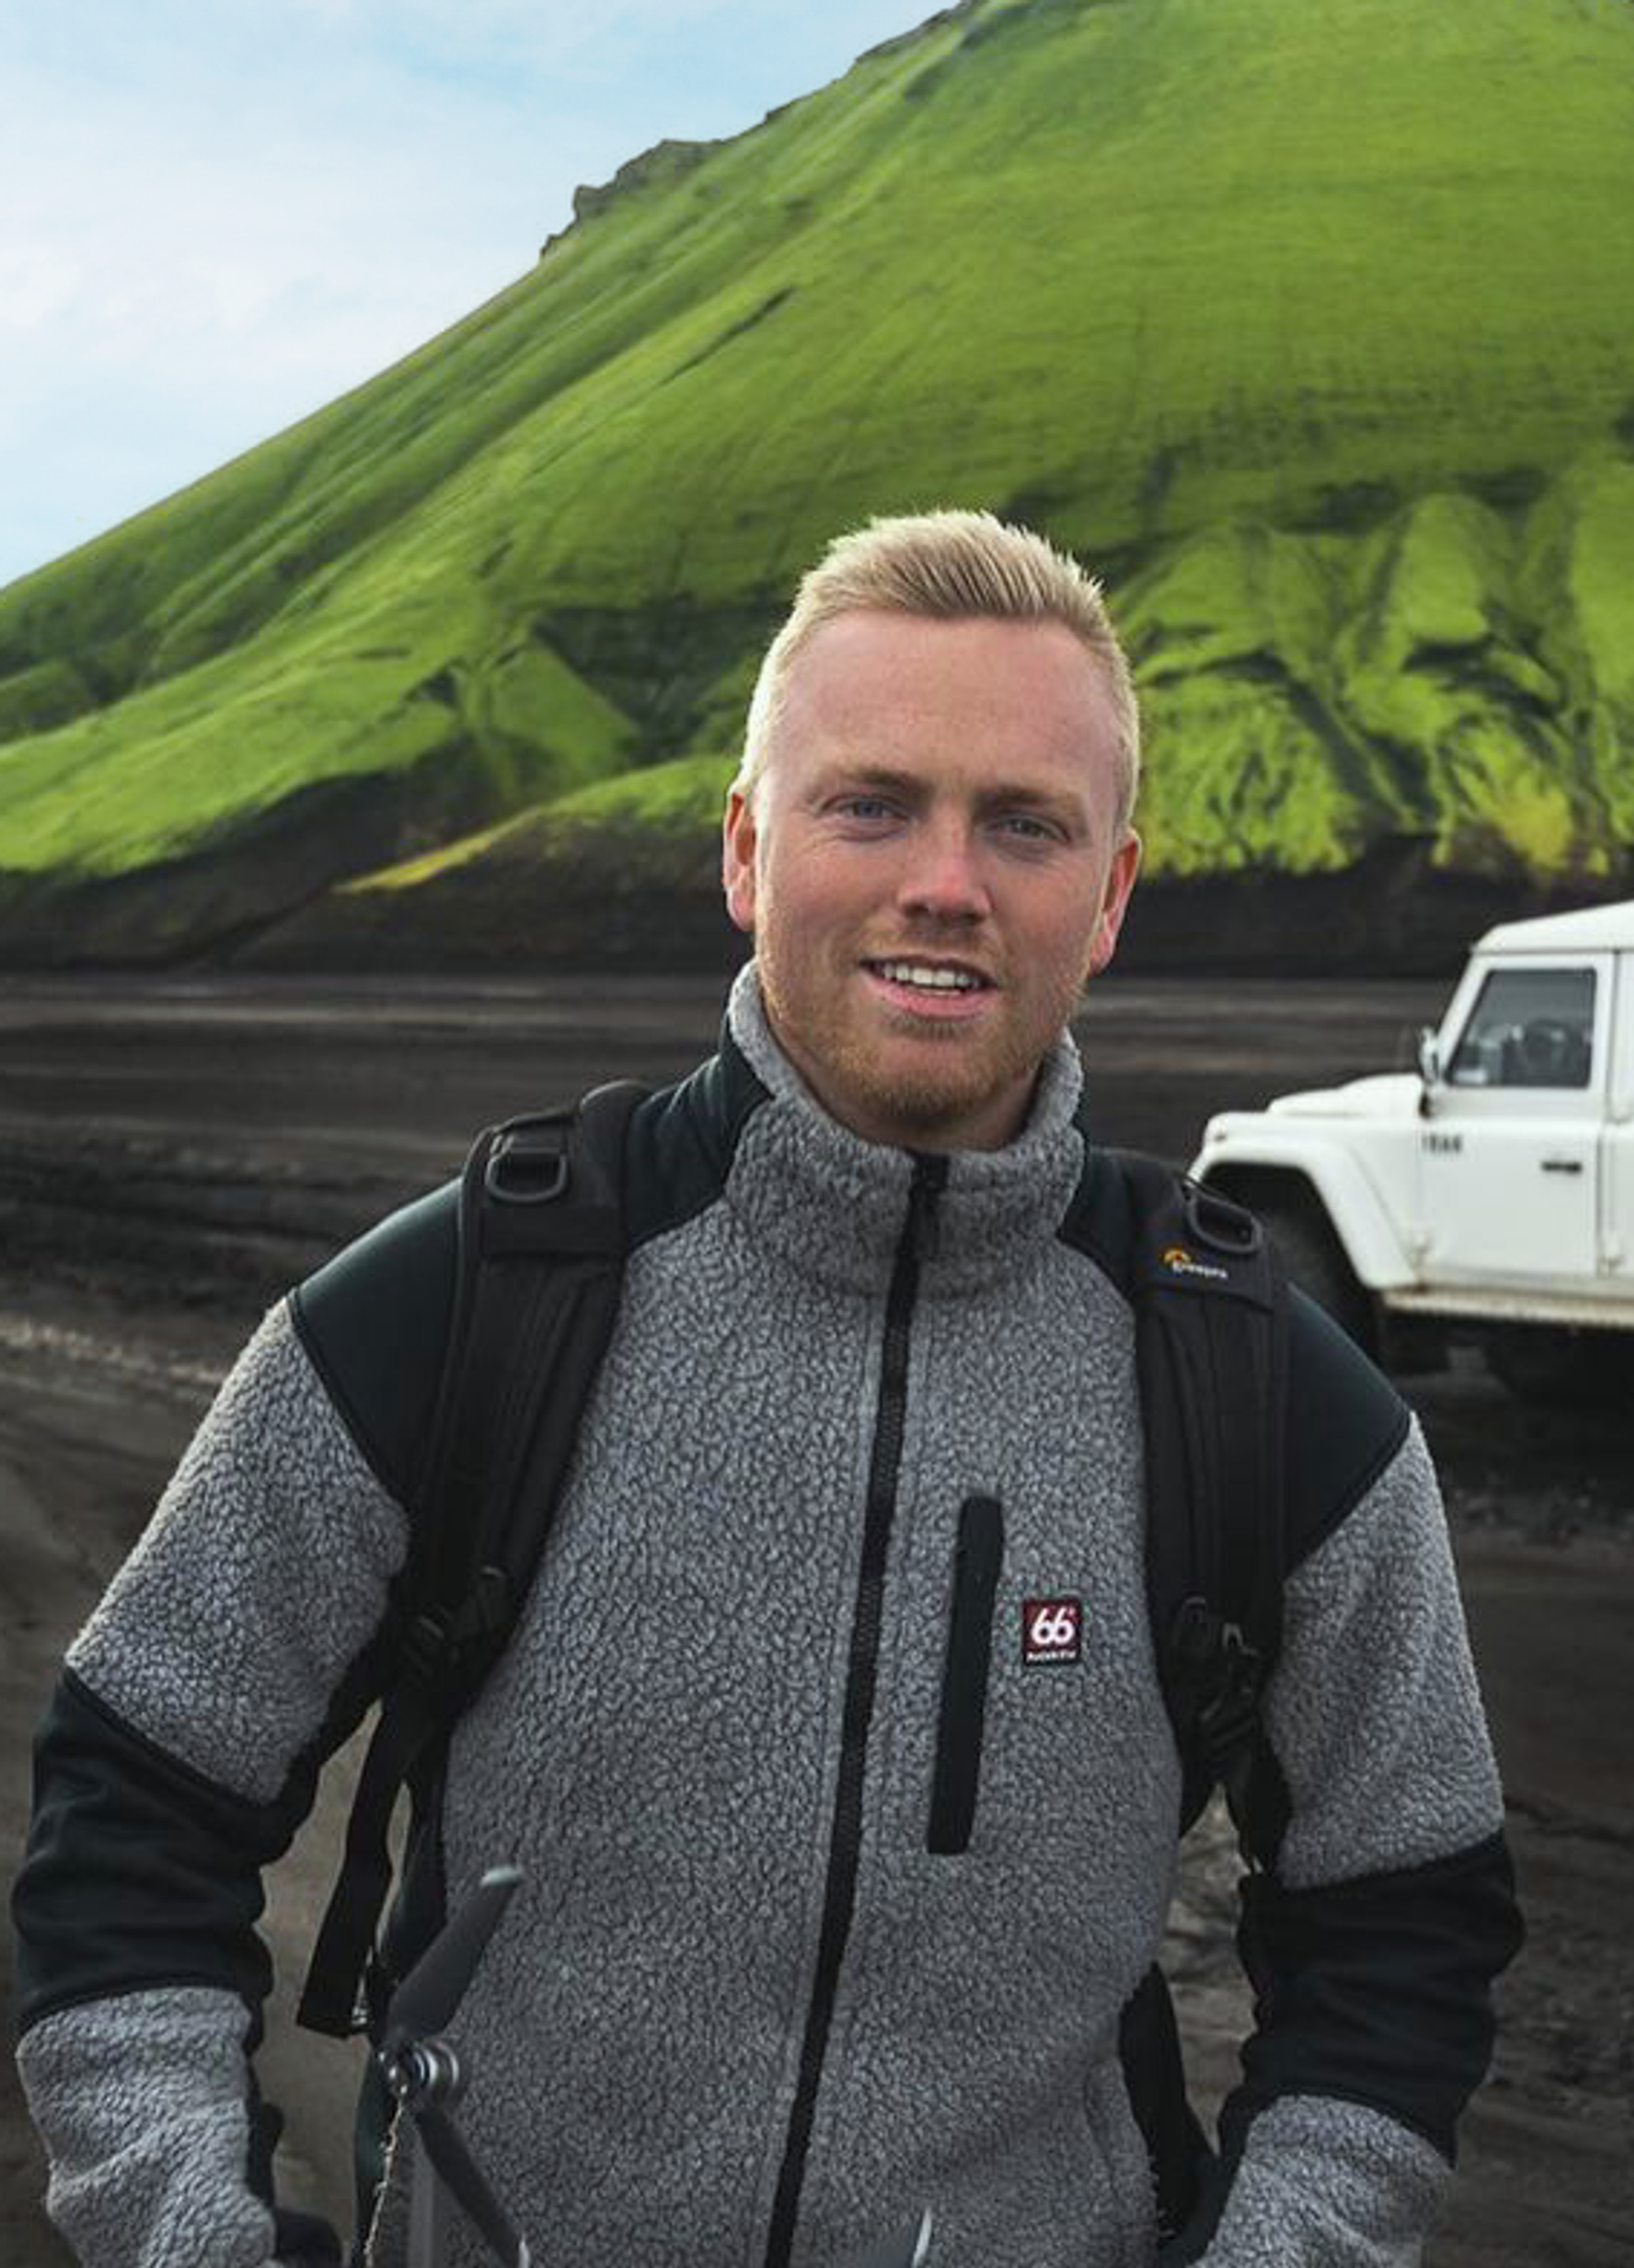 Garðar Ólafsson在一片黑沙滩上漫步，背后是一辆租来的汽车，他面带微笑，附近是碎石路。